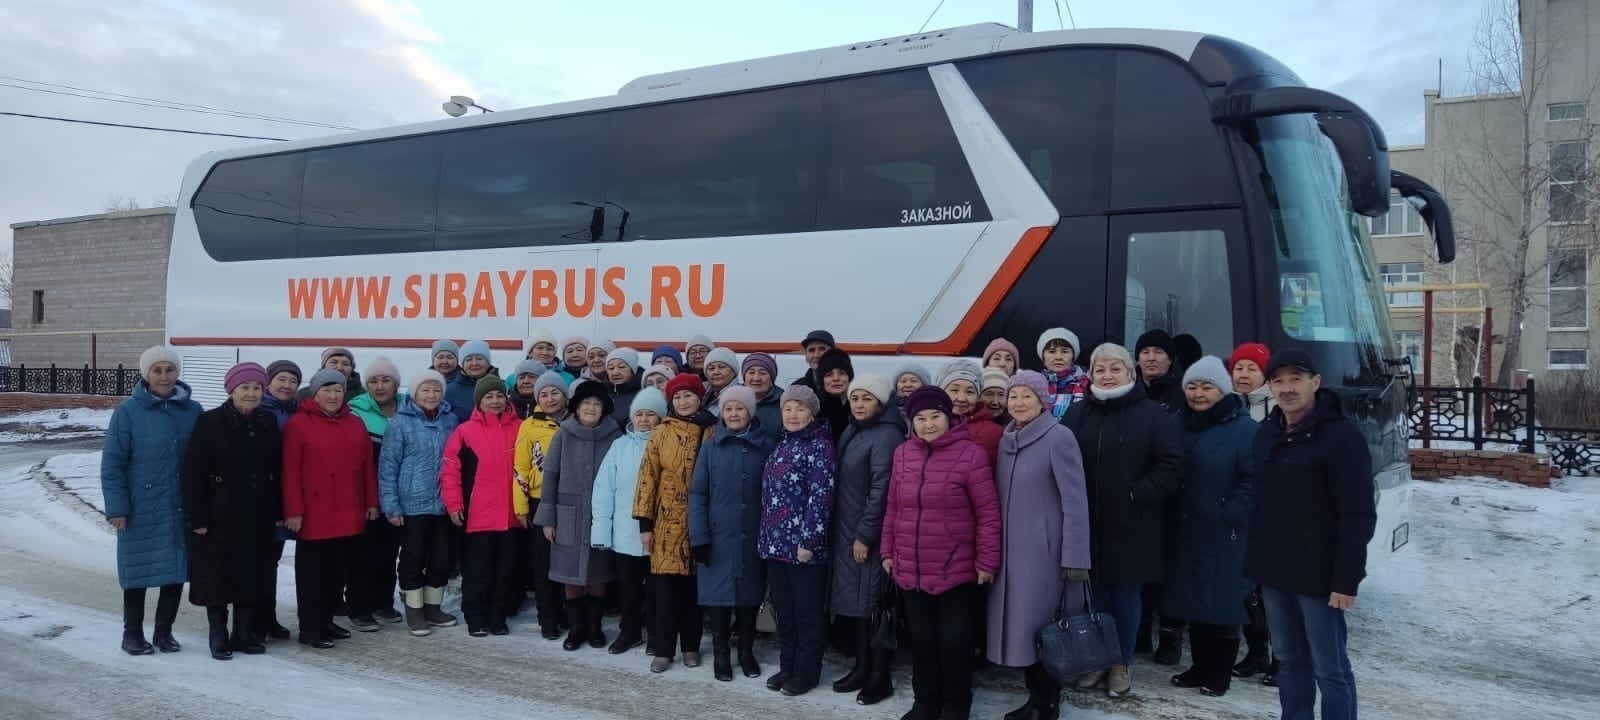 Республиканскую программу социального туризма «Башкирское долголетие» расширят до 20 тысяч участников